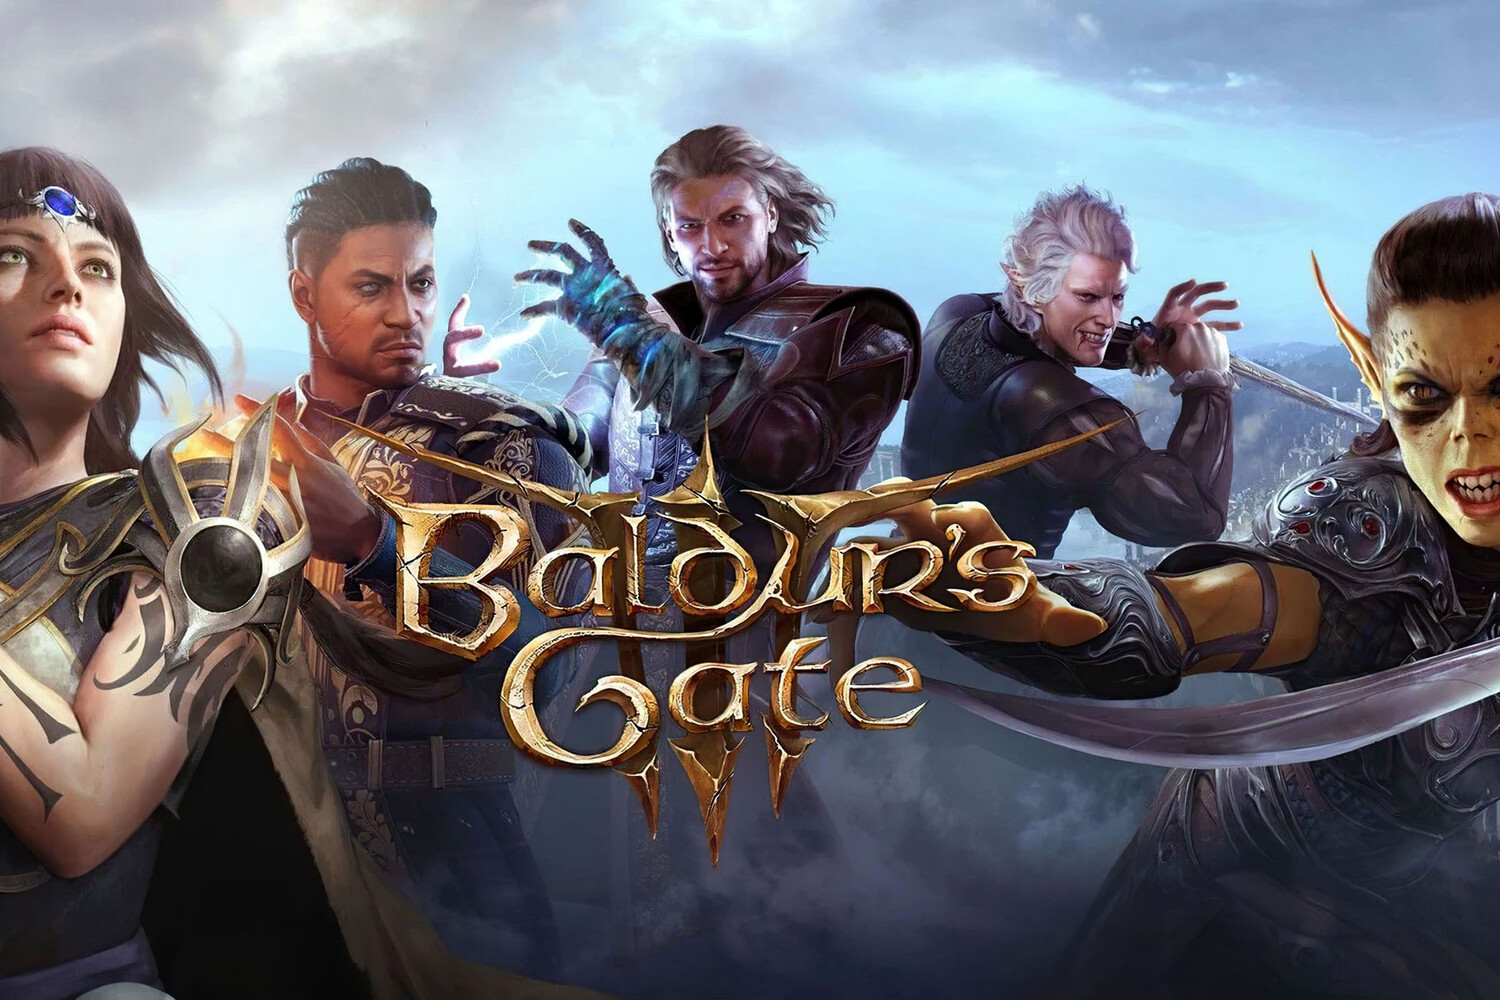 Baldurs Gate 3 получила пострелизный мод для мультикласса на любых уровнях сложности